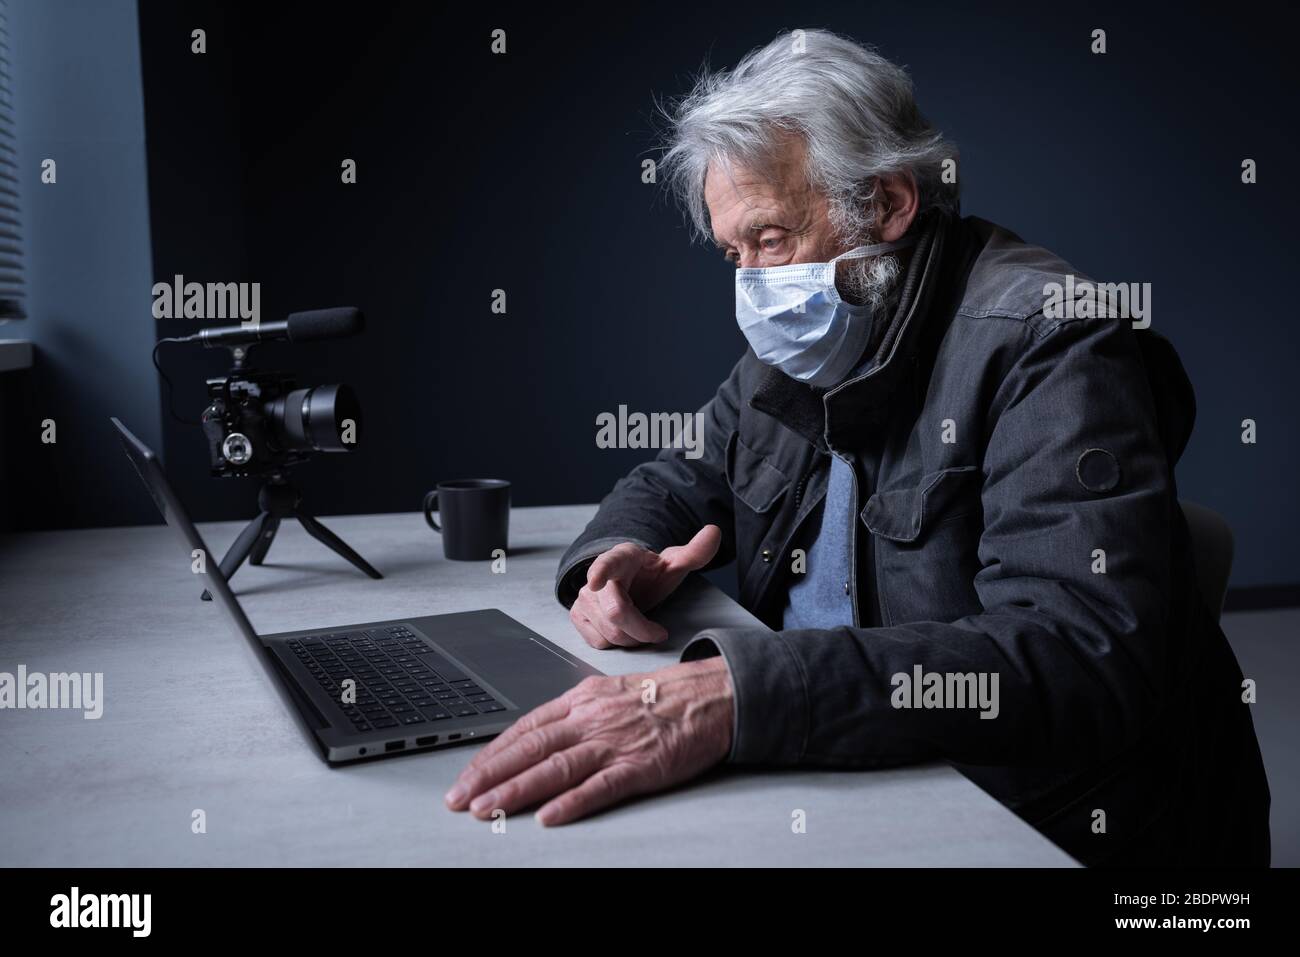 Senior man sitzt am Schreibtisch und trägt eine chirurgische Maske, er verbindet sich mit seinem Laptop und streamt ein Video online auf seinem Kanal, Covid 19 Virus o Stockfoto